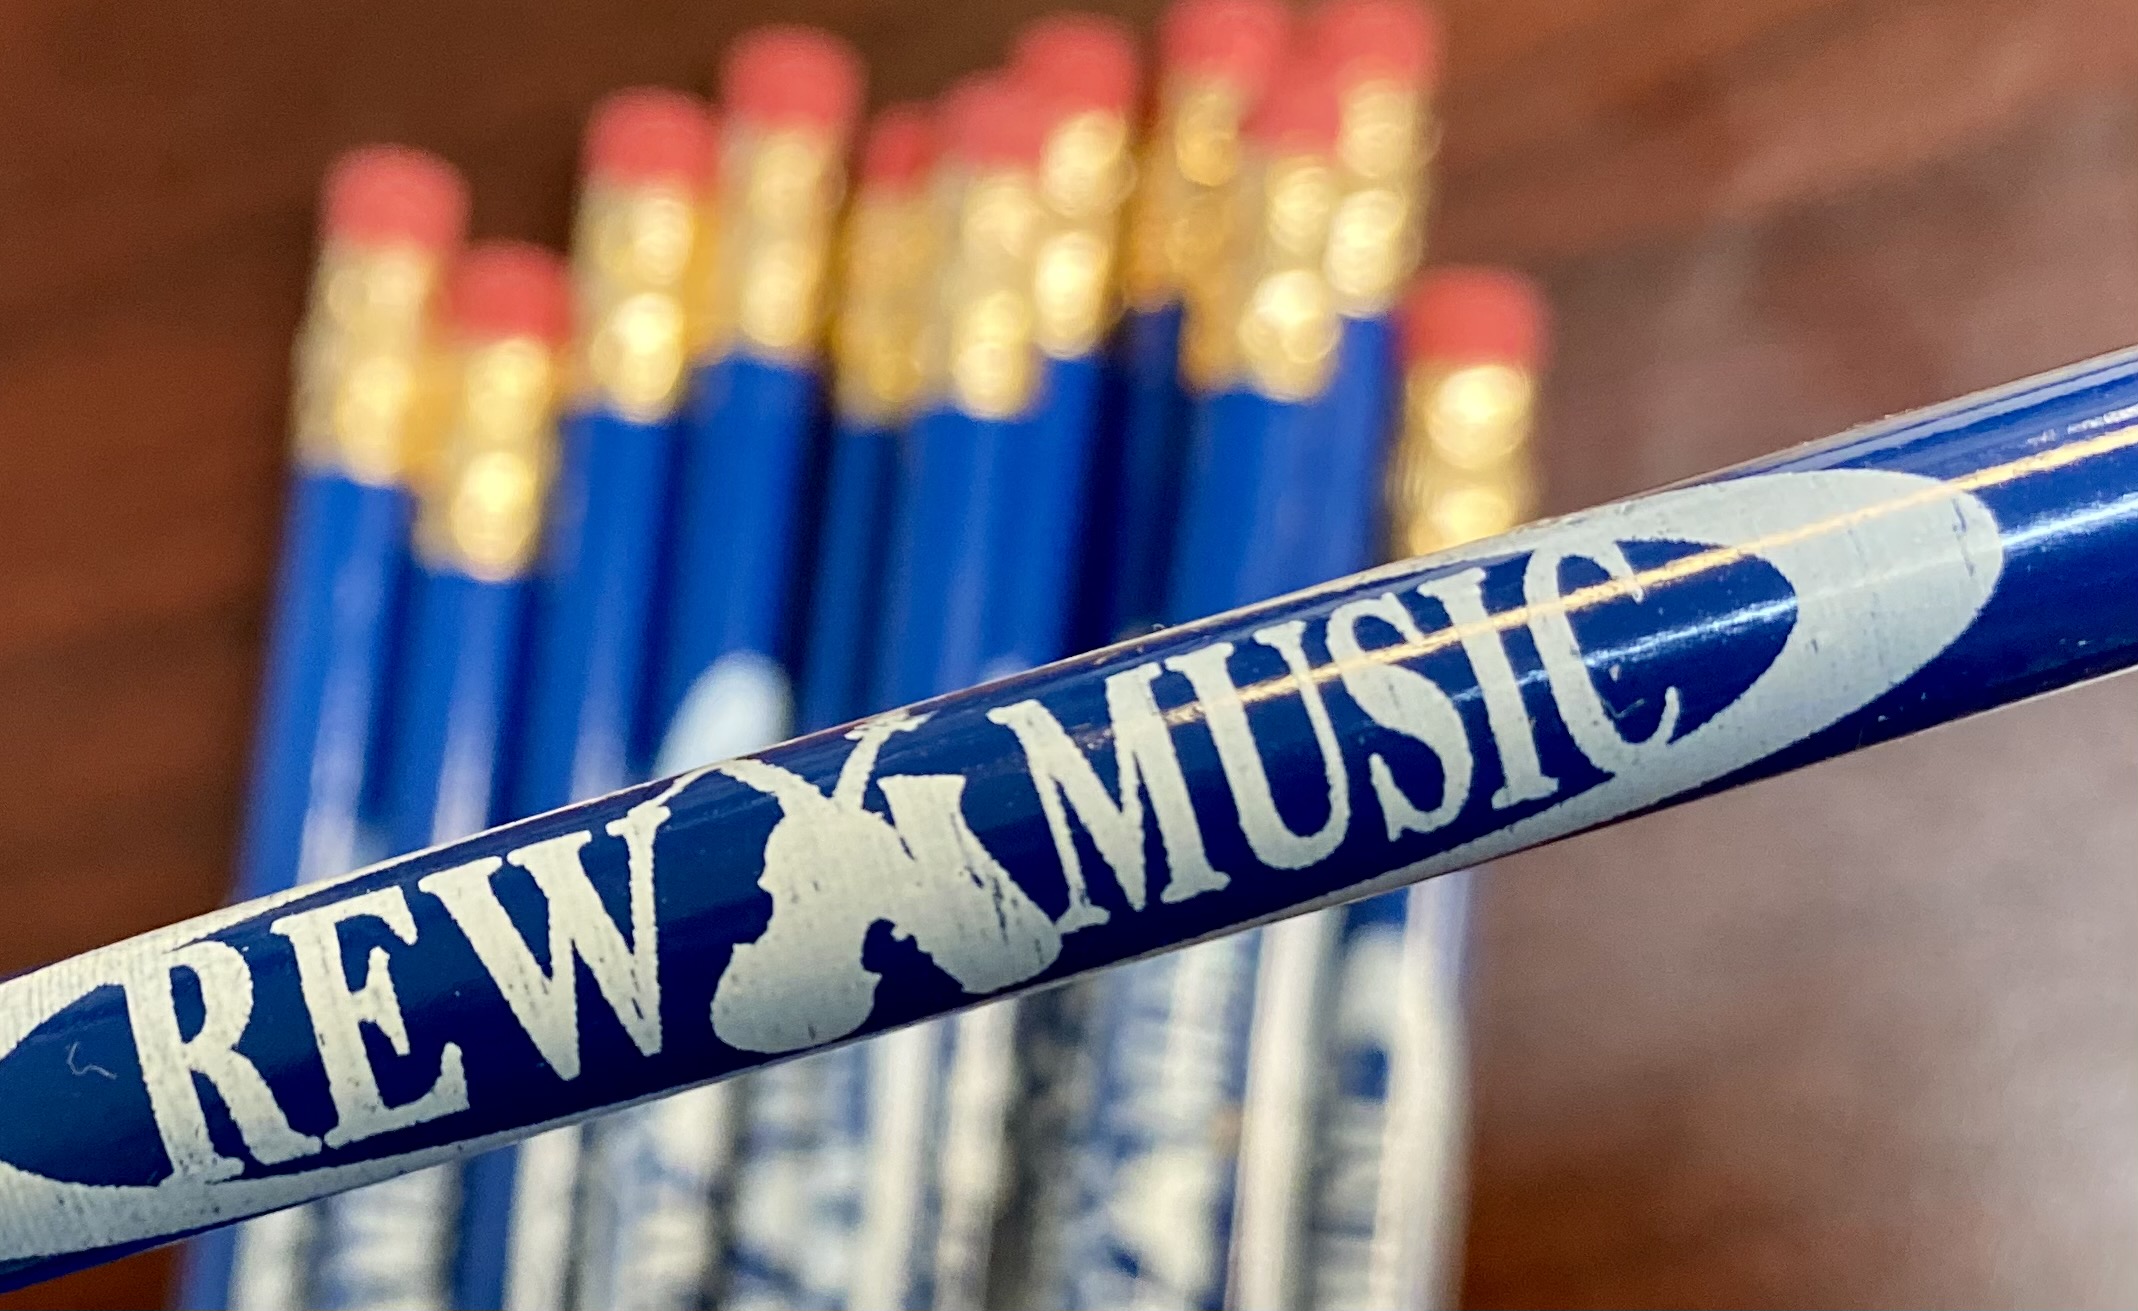 REW Music pencils